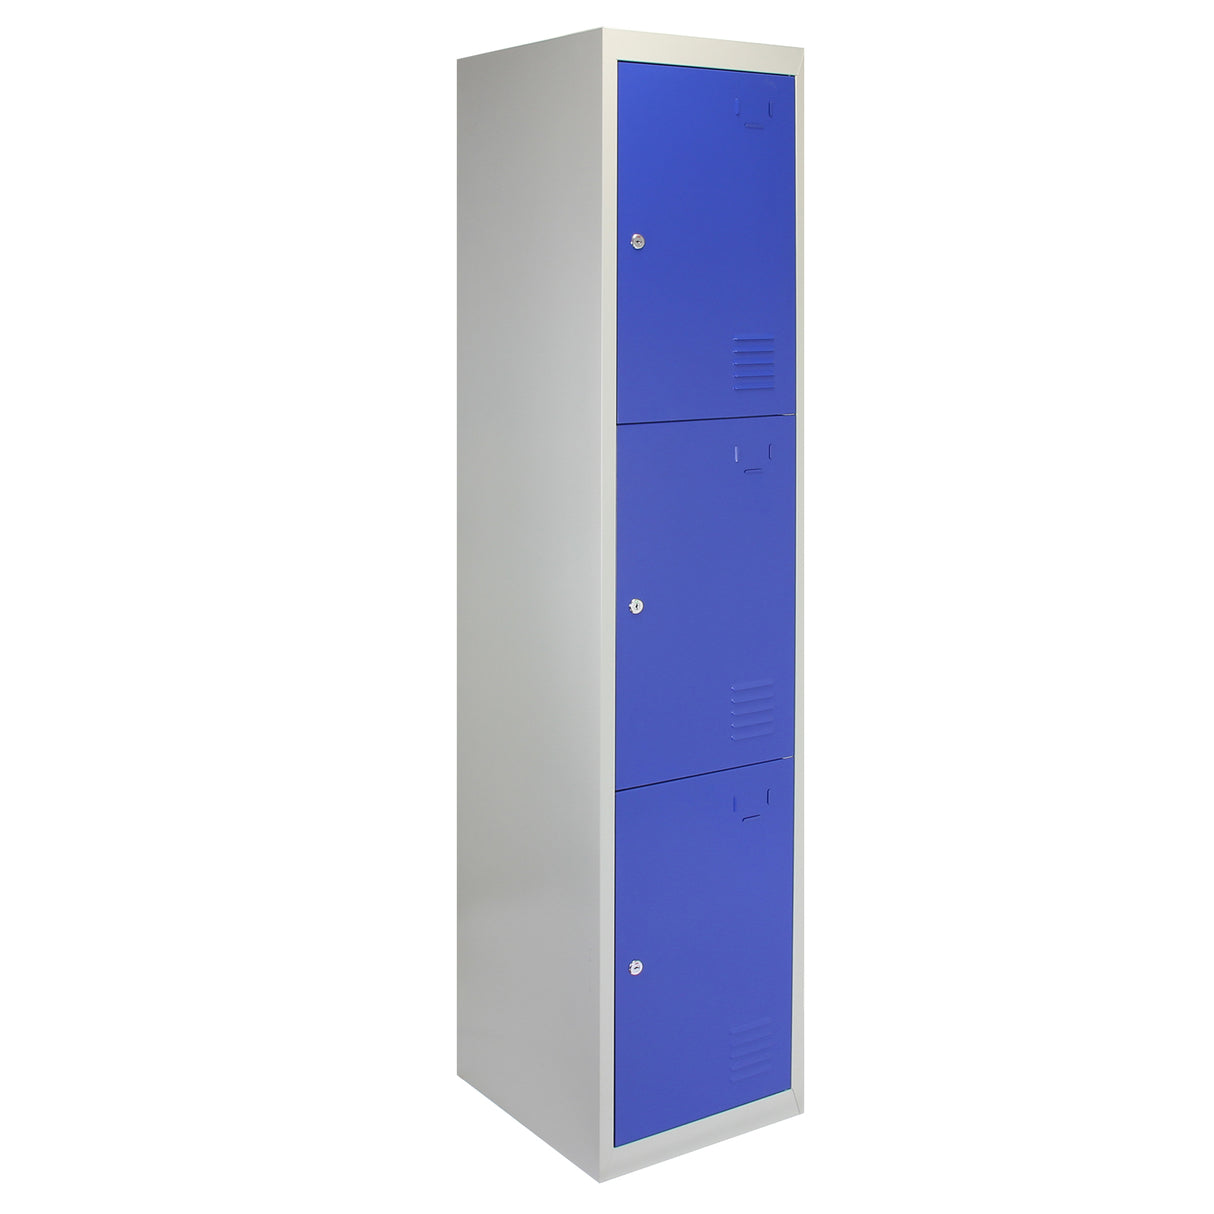 3 x casiers de rangement en métal - Trois portes, bleu - A plat